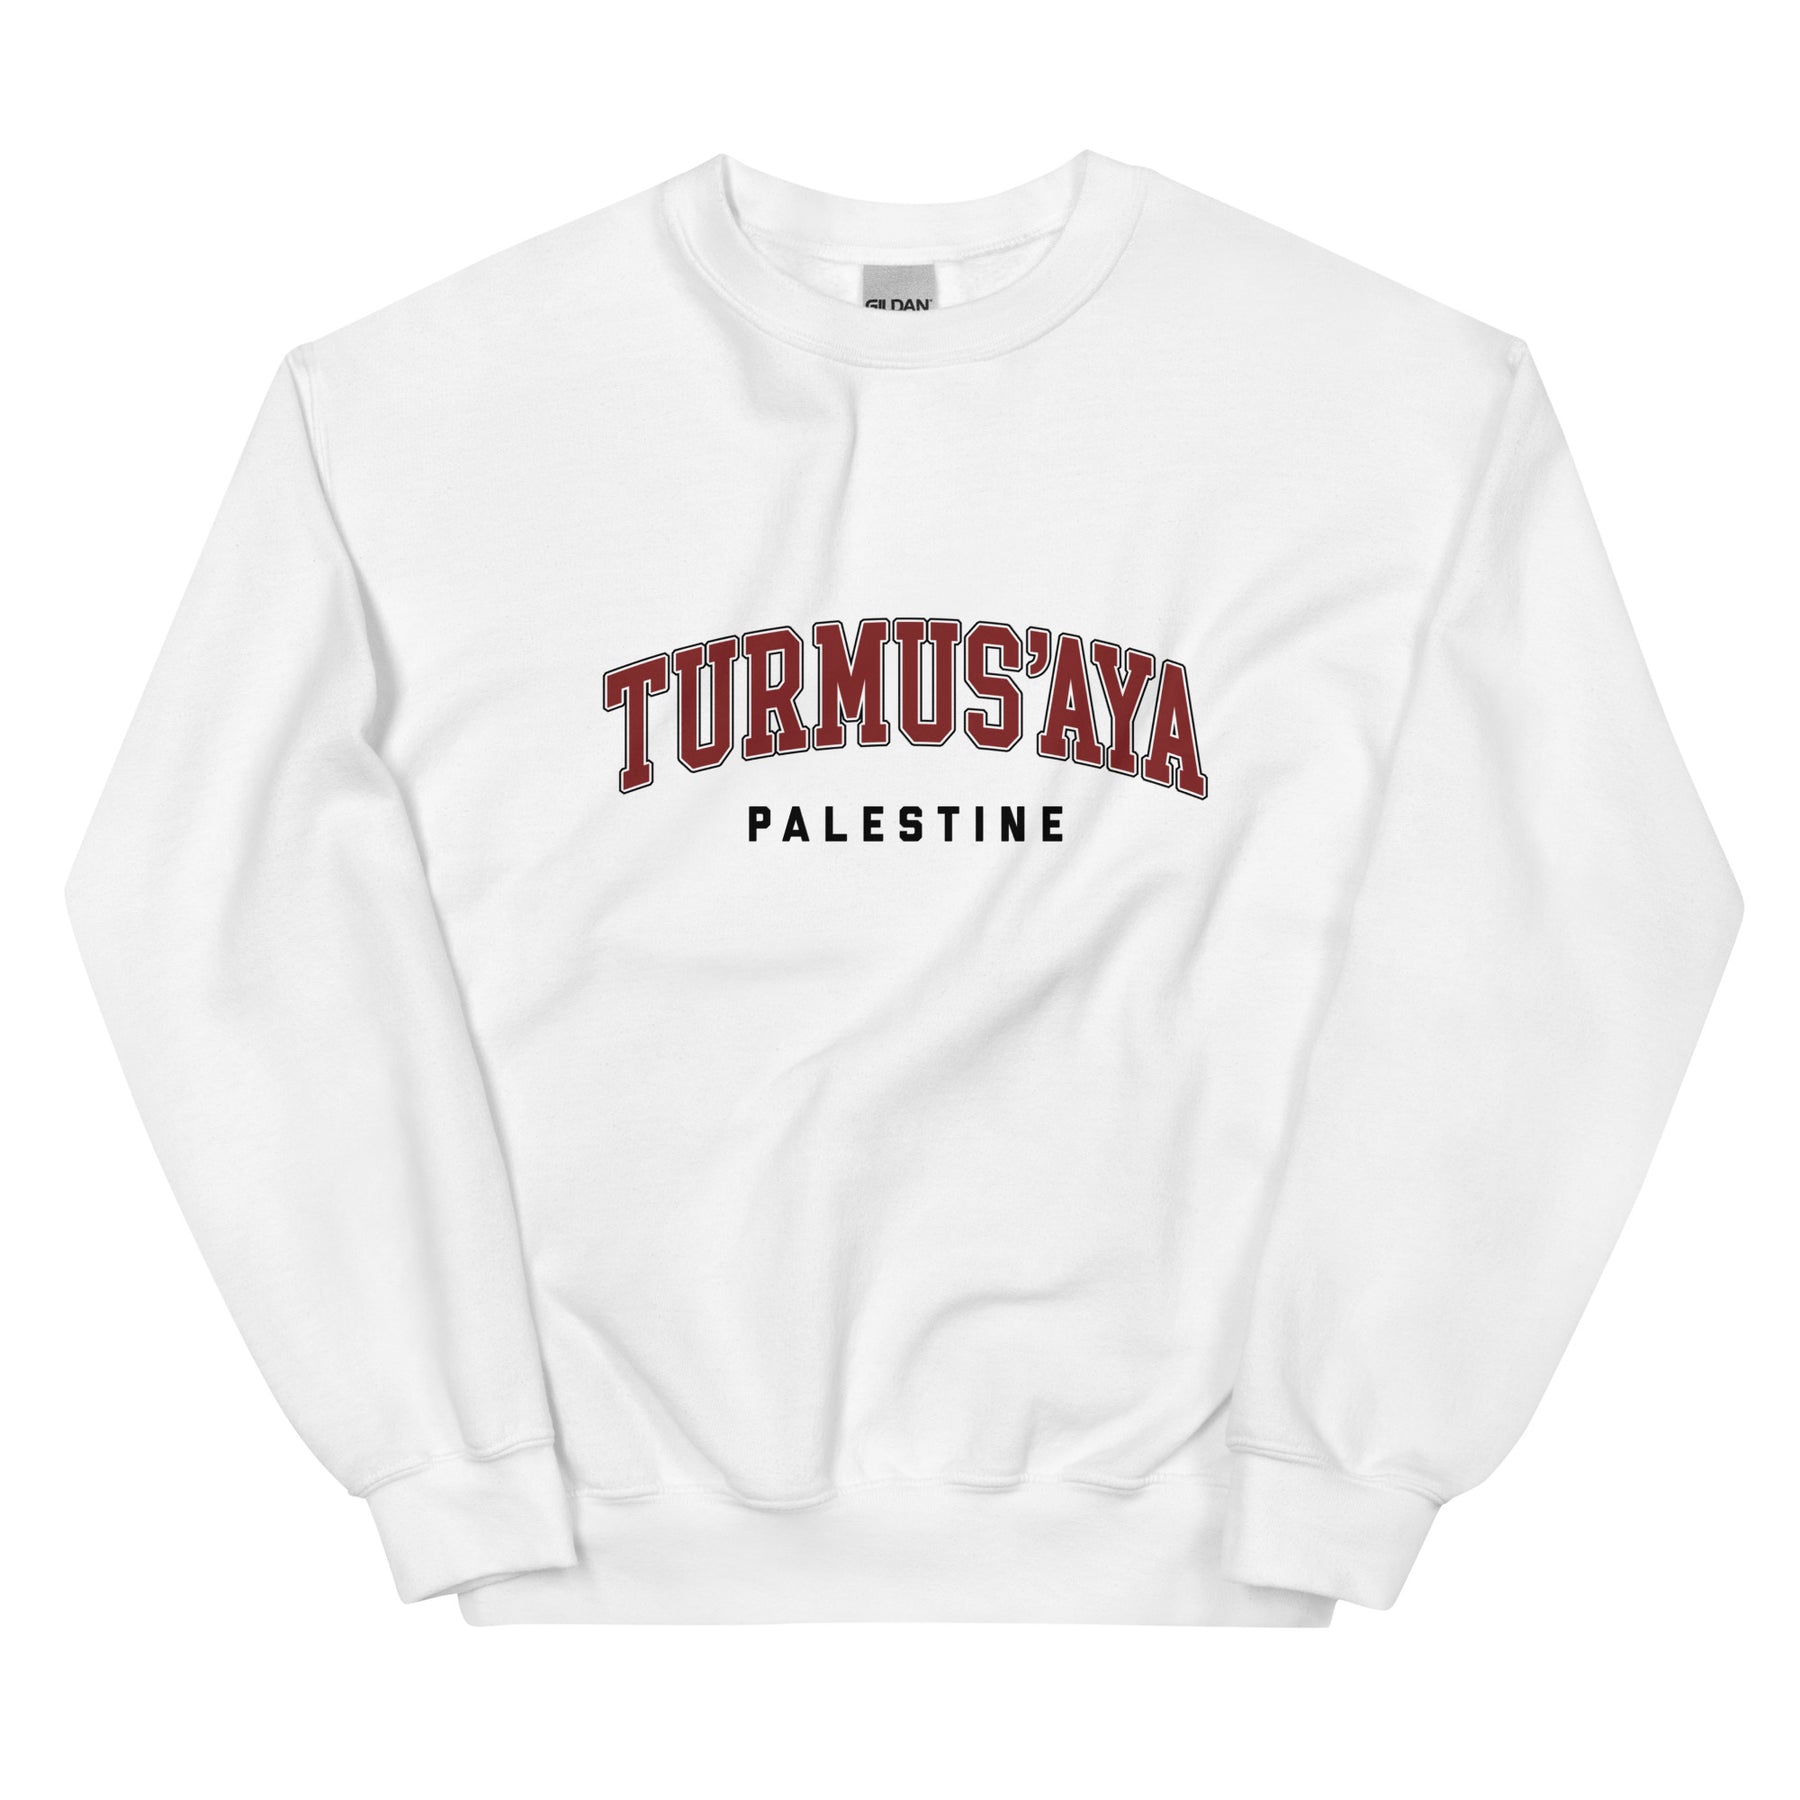 Turmus'aya, Palestine - Sweatshirt